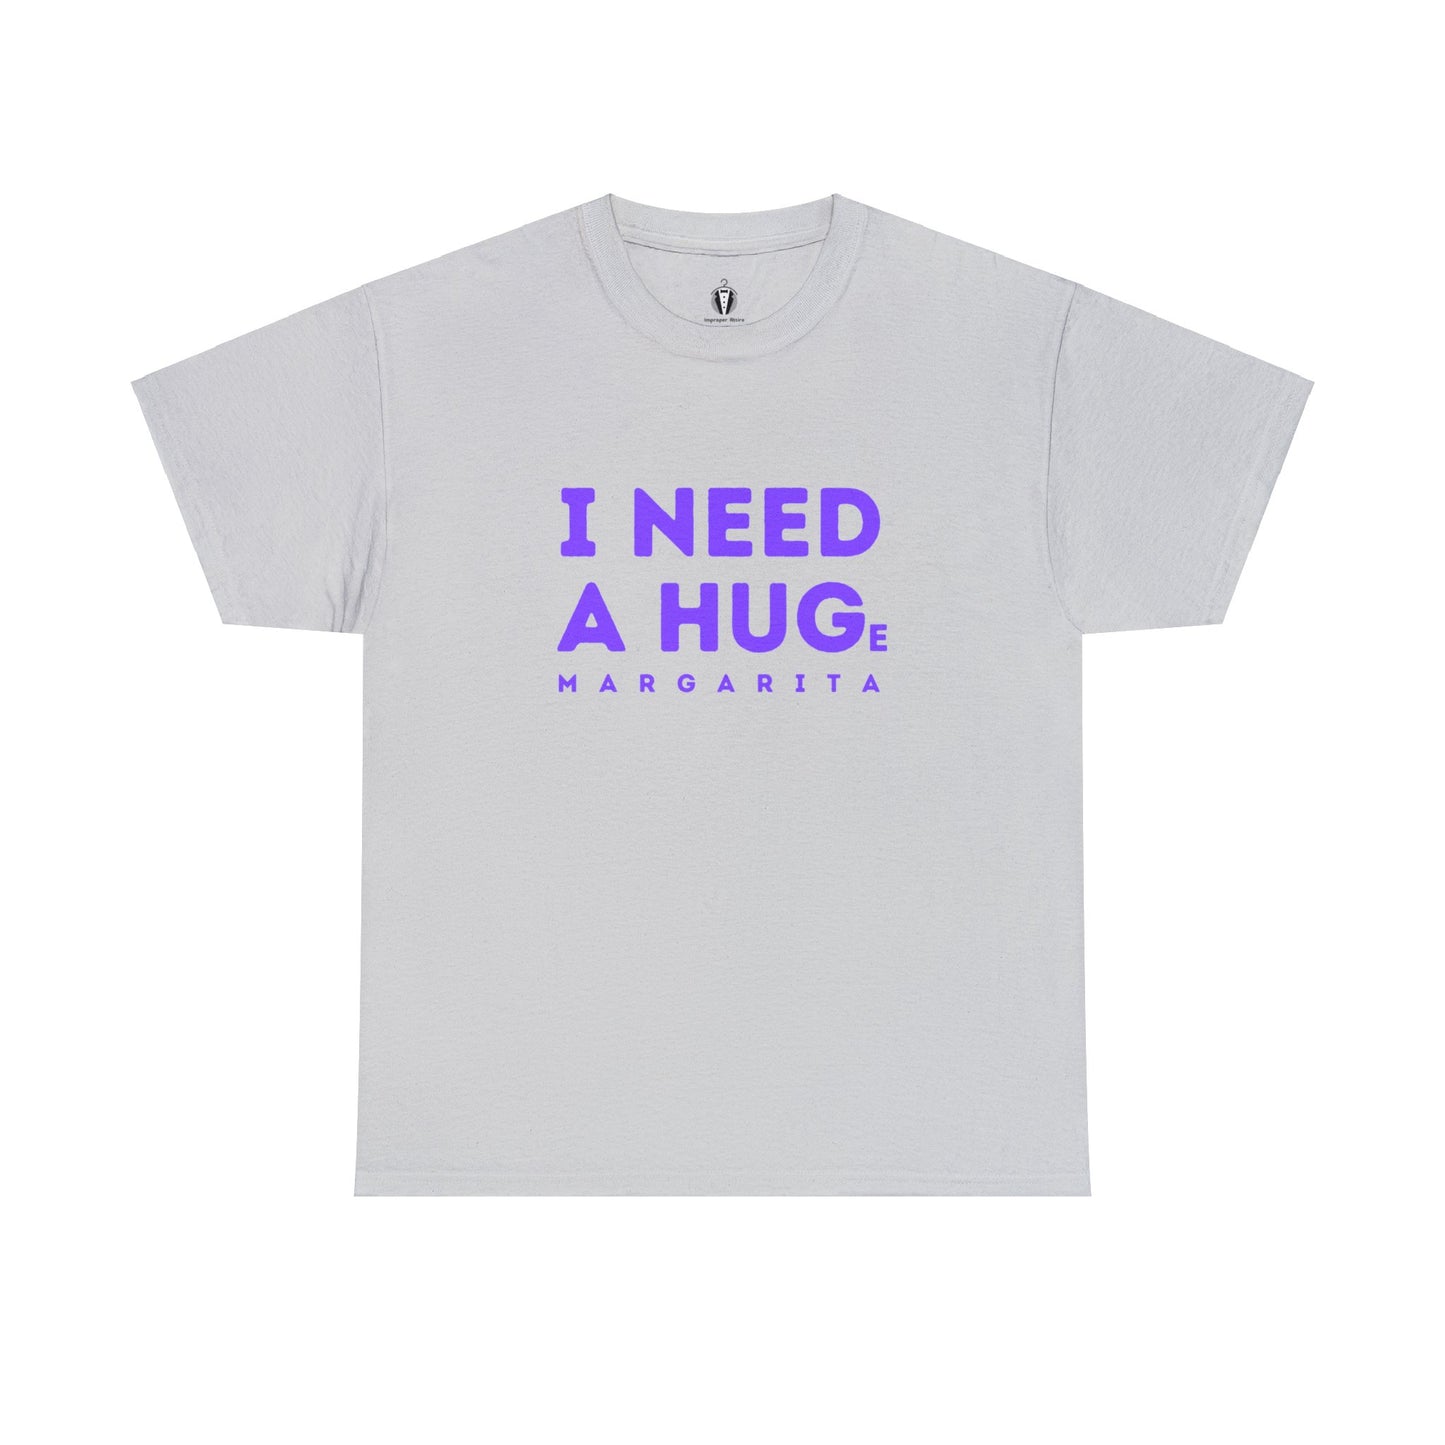 "I need a hug" - Tee